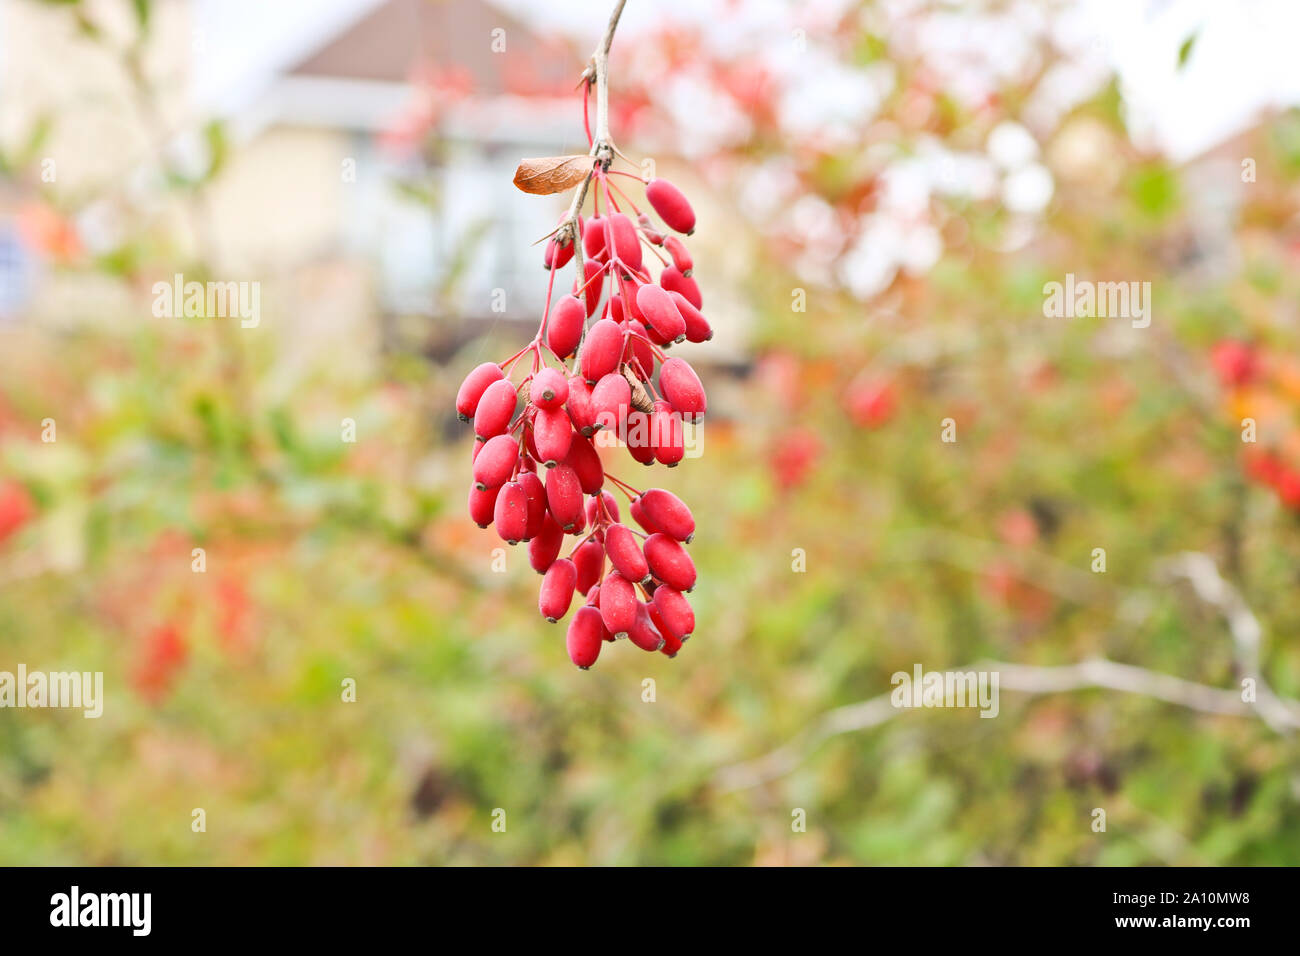 Los racimos de bayas rojas maduras de agracejo. Tiempo de otoño. Foto de stock